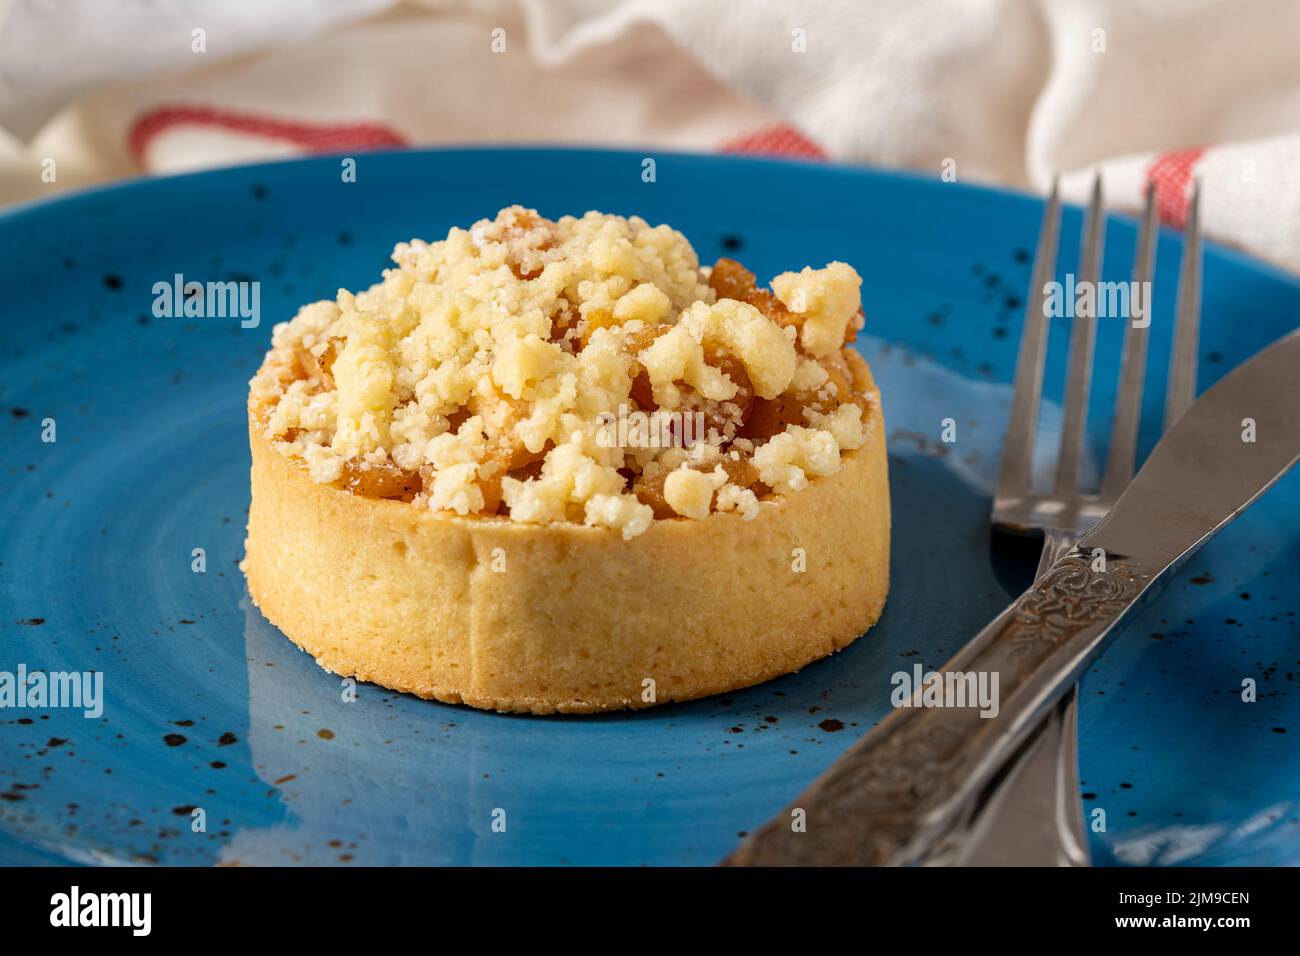 Pastel de manzana recién horneado en una porción en un plato de porcelana azul Foto de stock